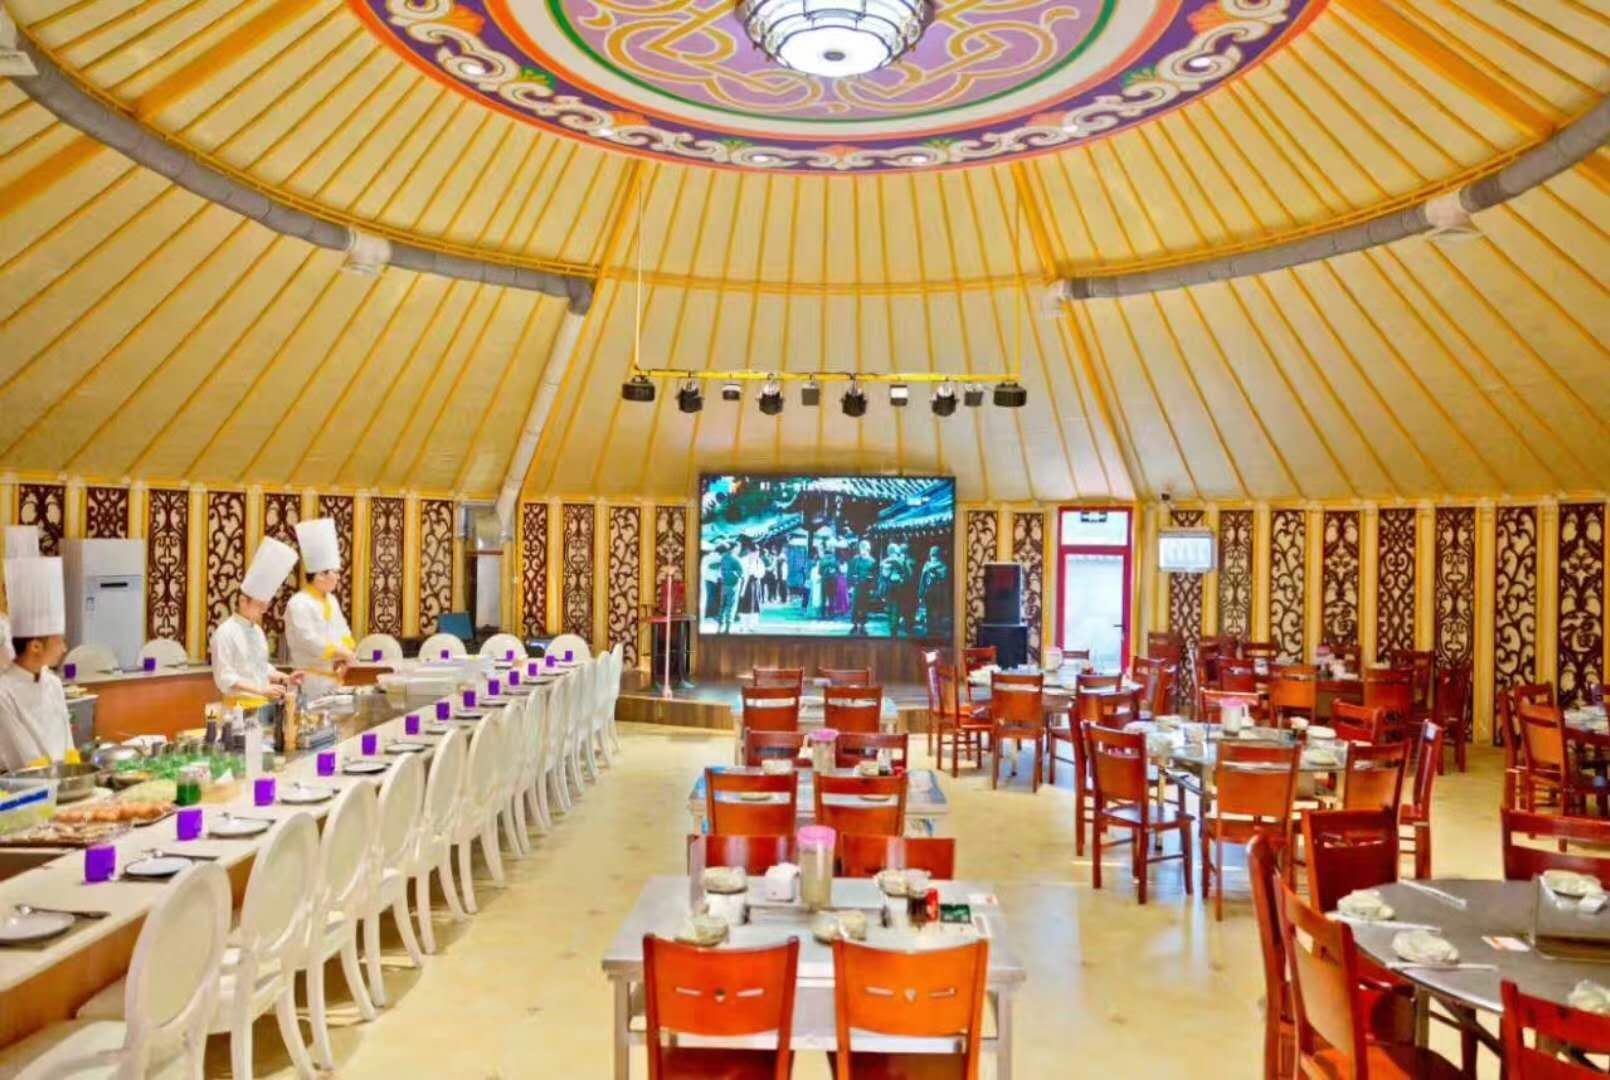 706m²超大型宴会厅蒙古包 - 大型蒙古包 - 蒙古包/蒙古包定制/蒙古包厂家